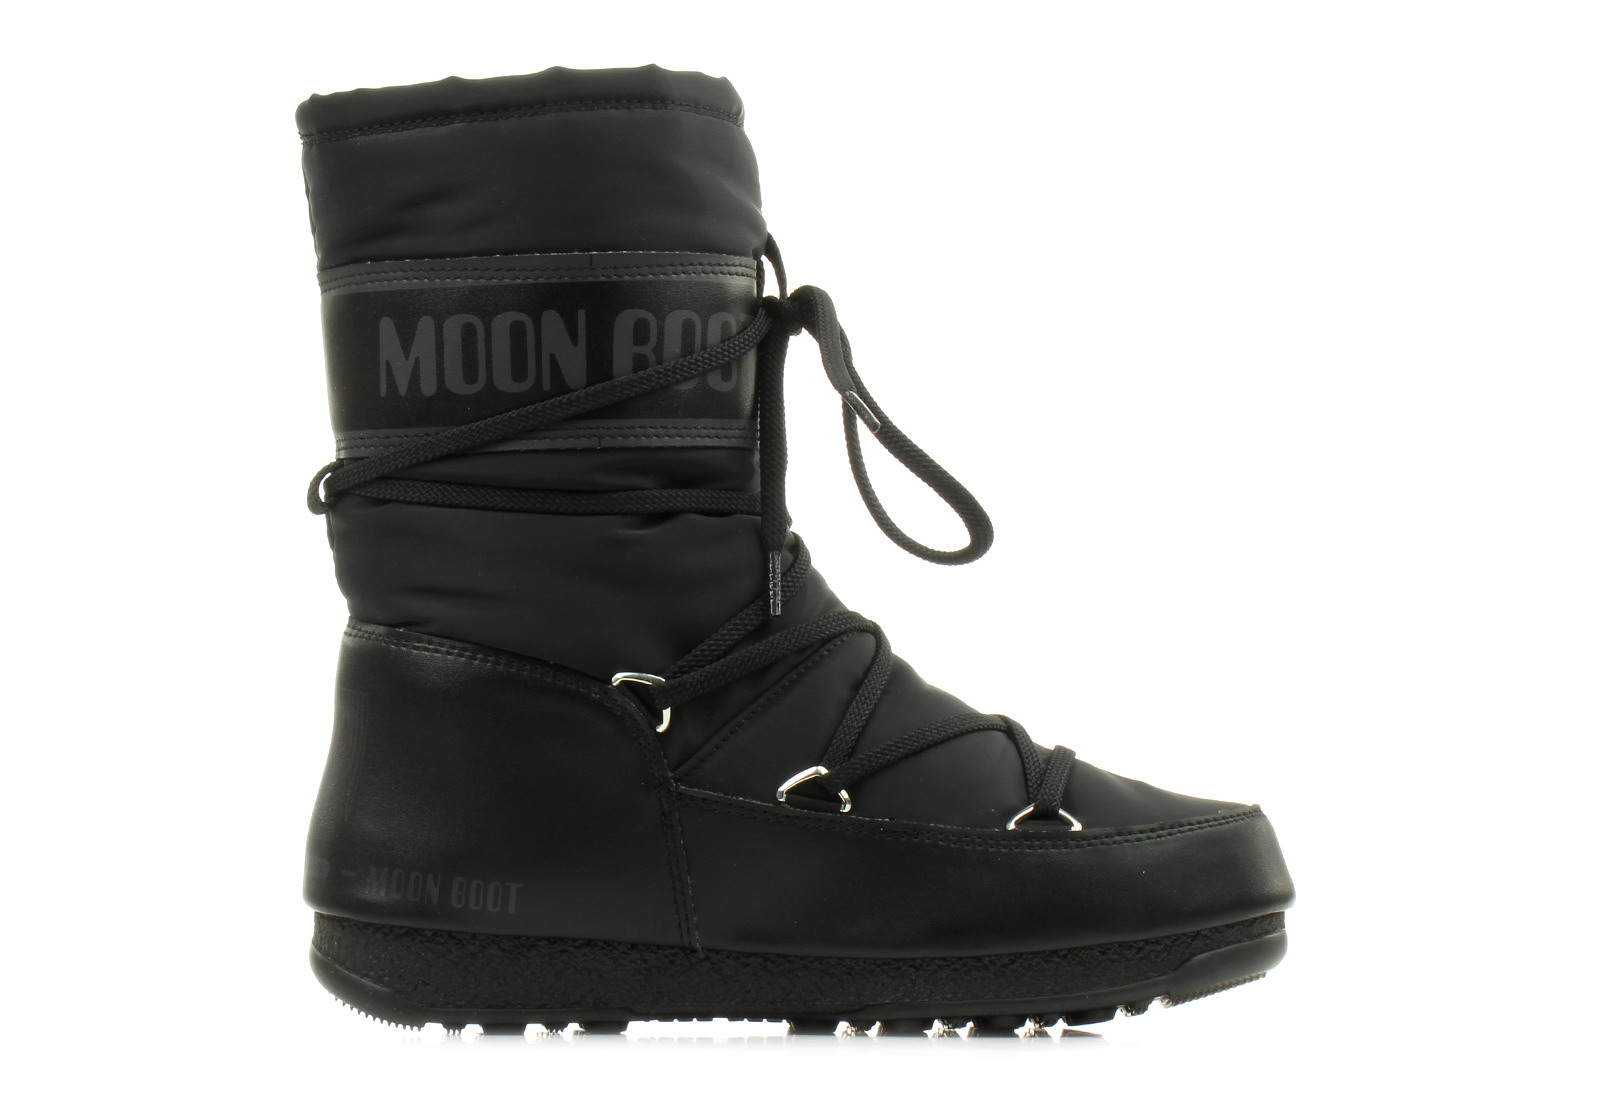 Moon Boot Čizme Za Snijeg Crne Čizme 